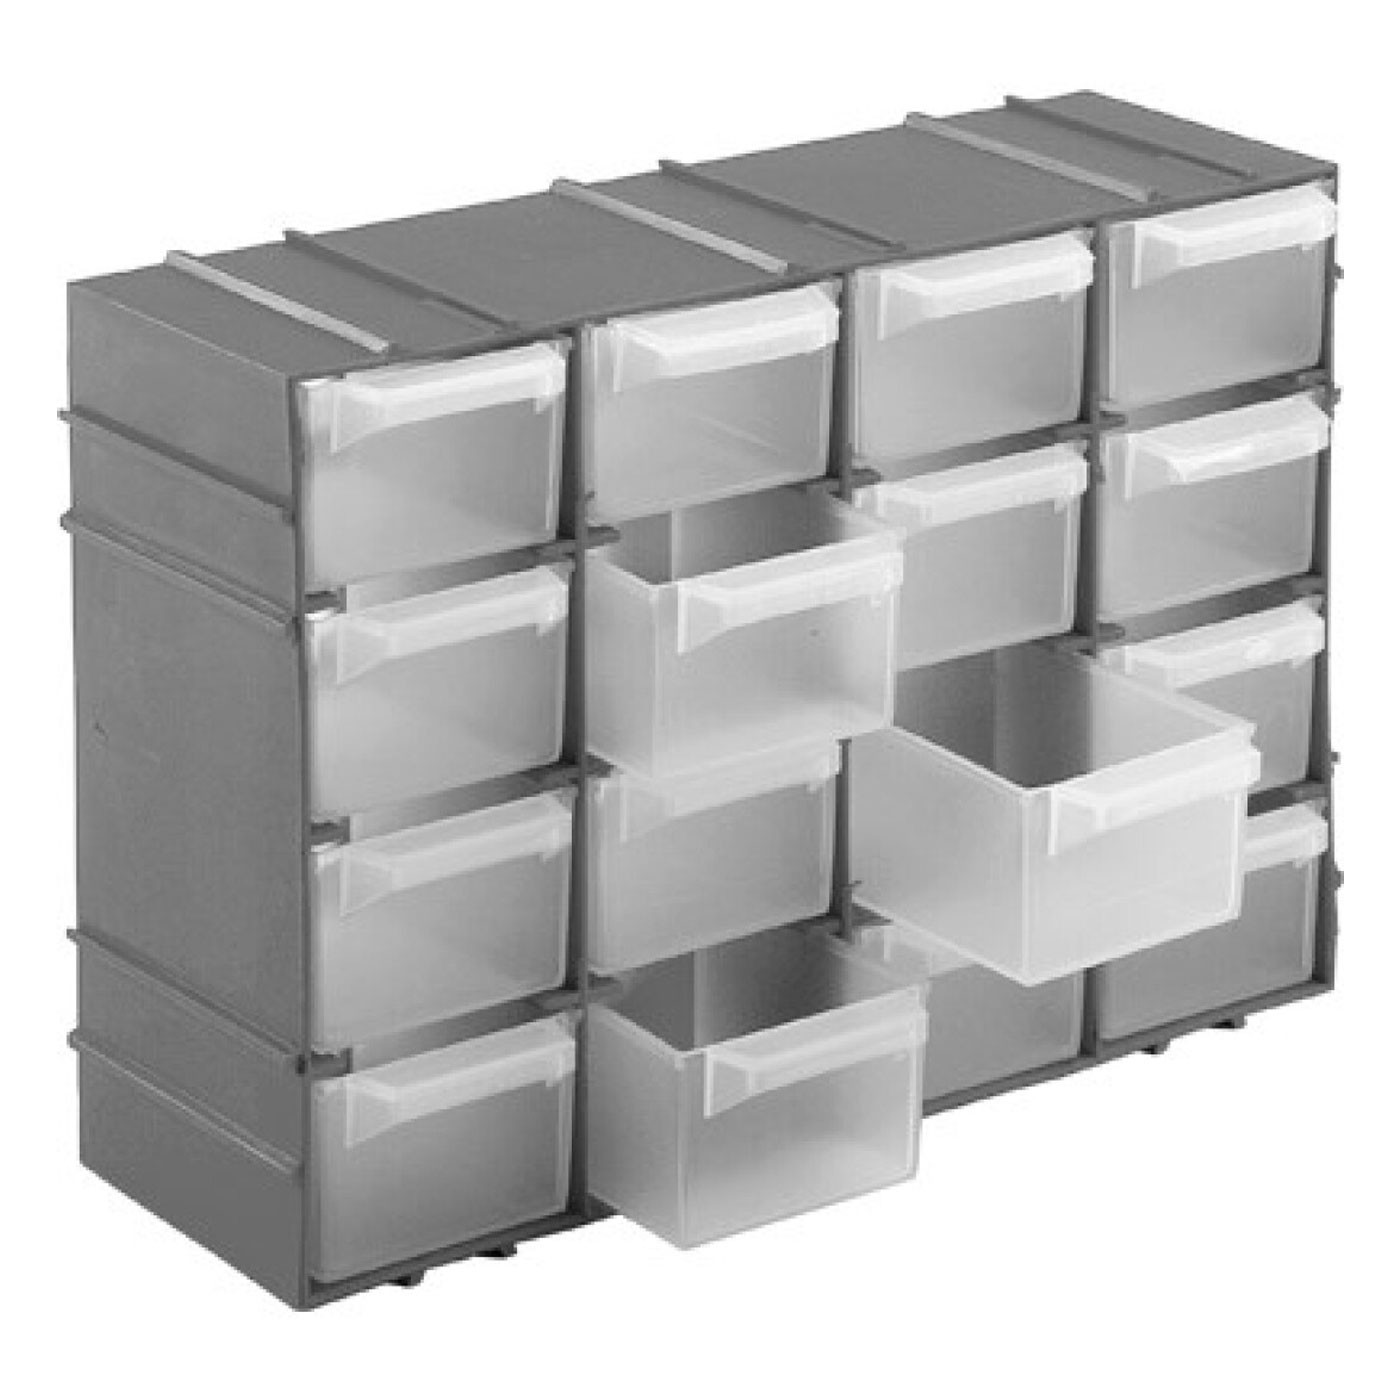 Tradineur - Pack de 3 separadores para cajones - Fabricados en